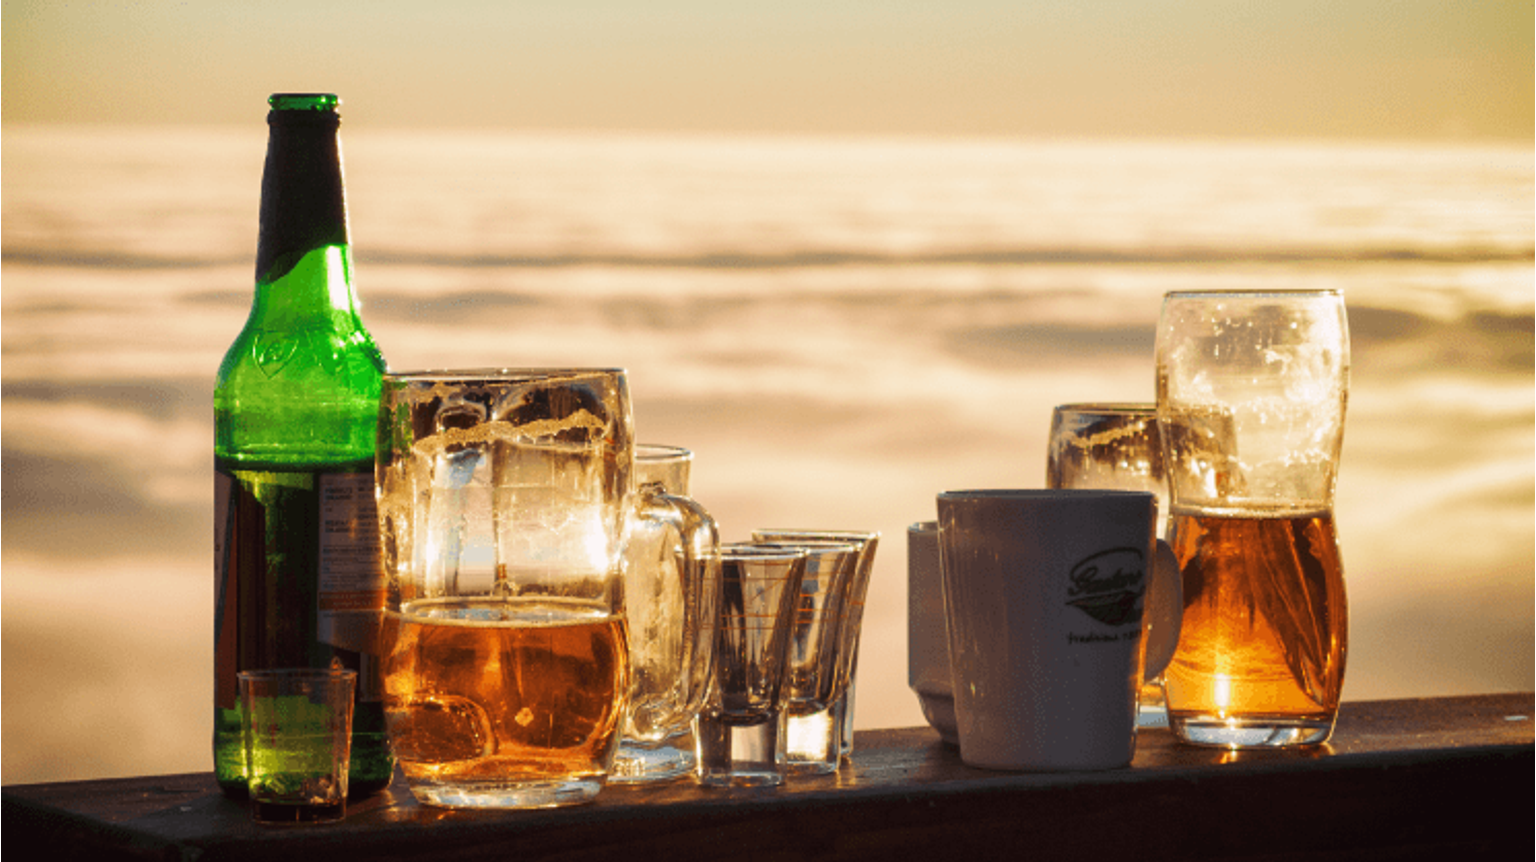 thumbnail for blog article named: 8 fakta om alkoholfri öl!